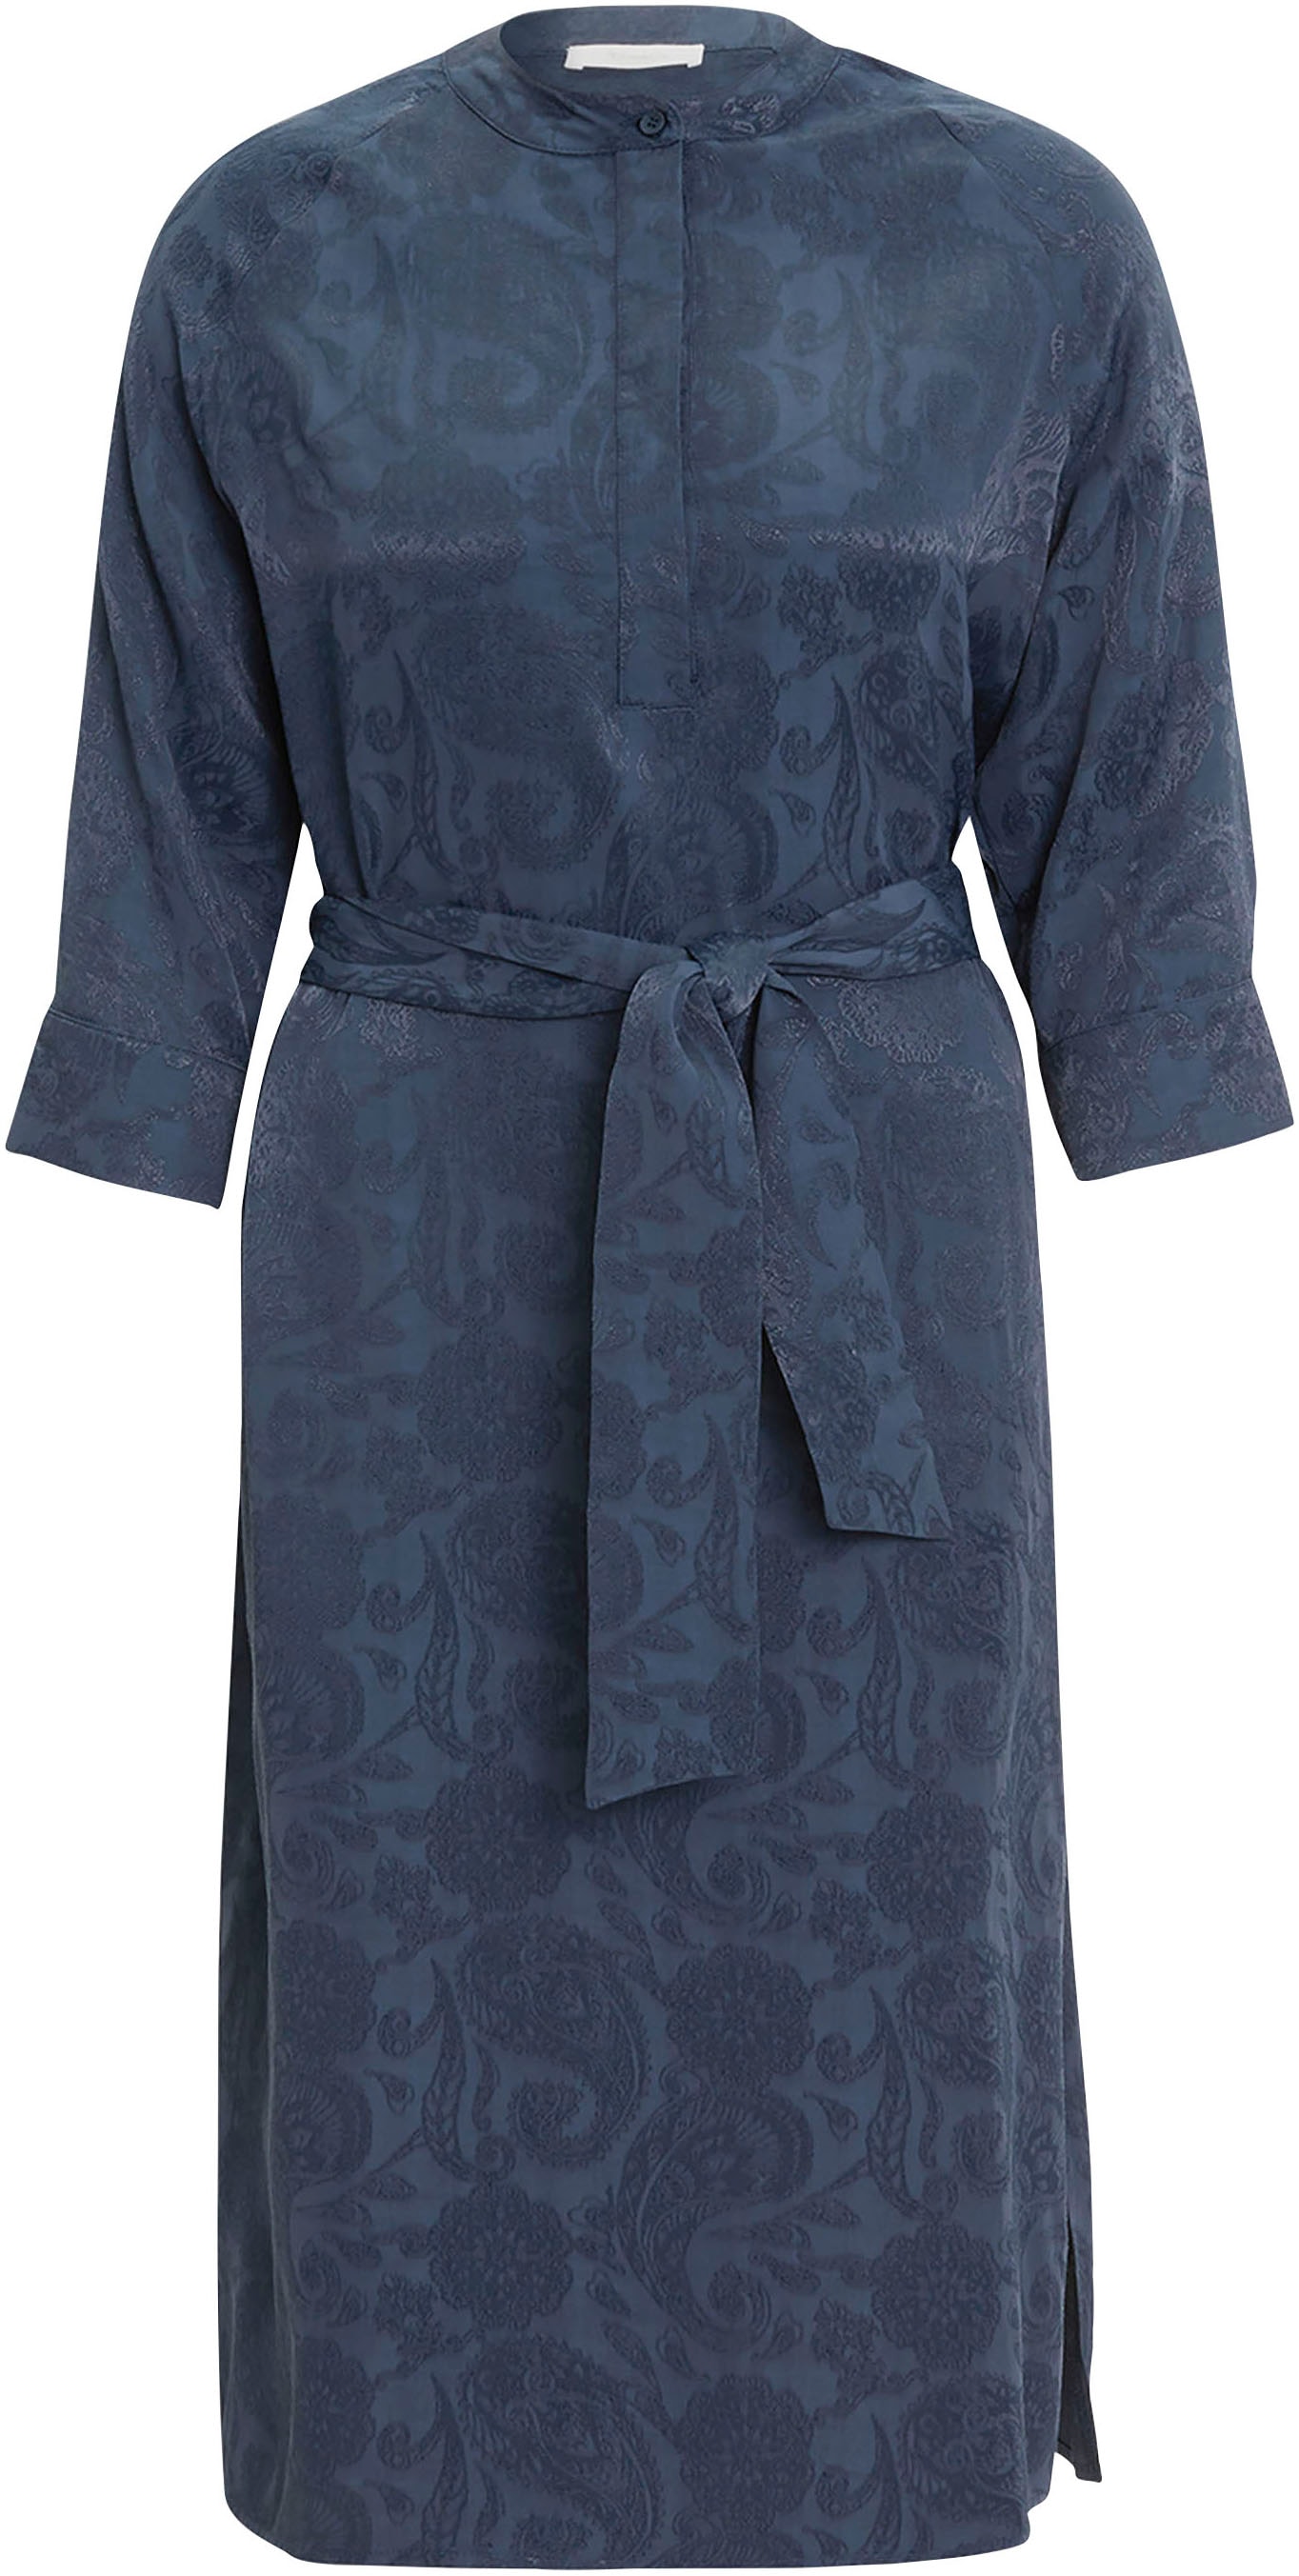 Tamaris Hemdblusenkleid, mit glänzenden Paisley-Muster kaufen - NEUE KOLLEKTION